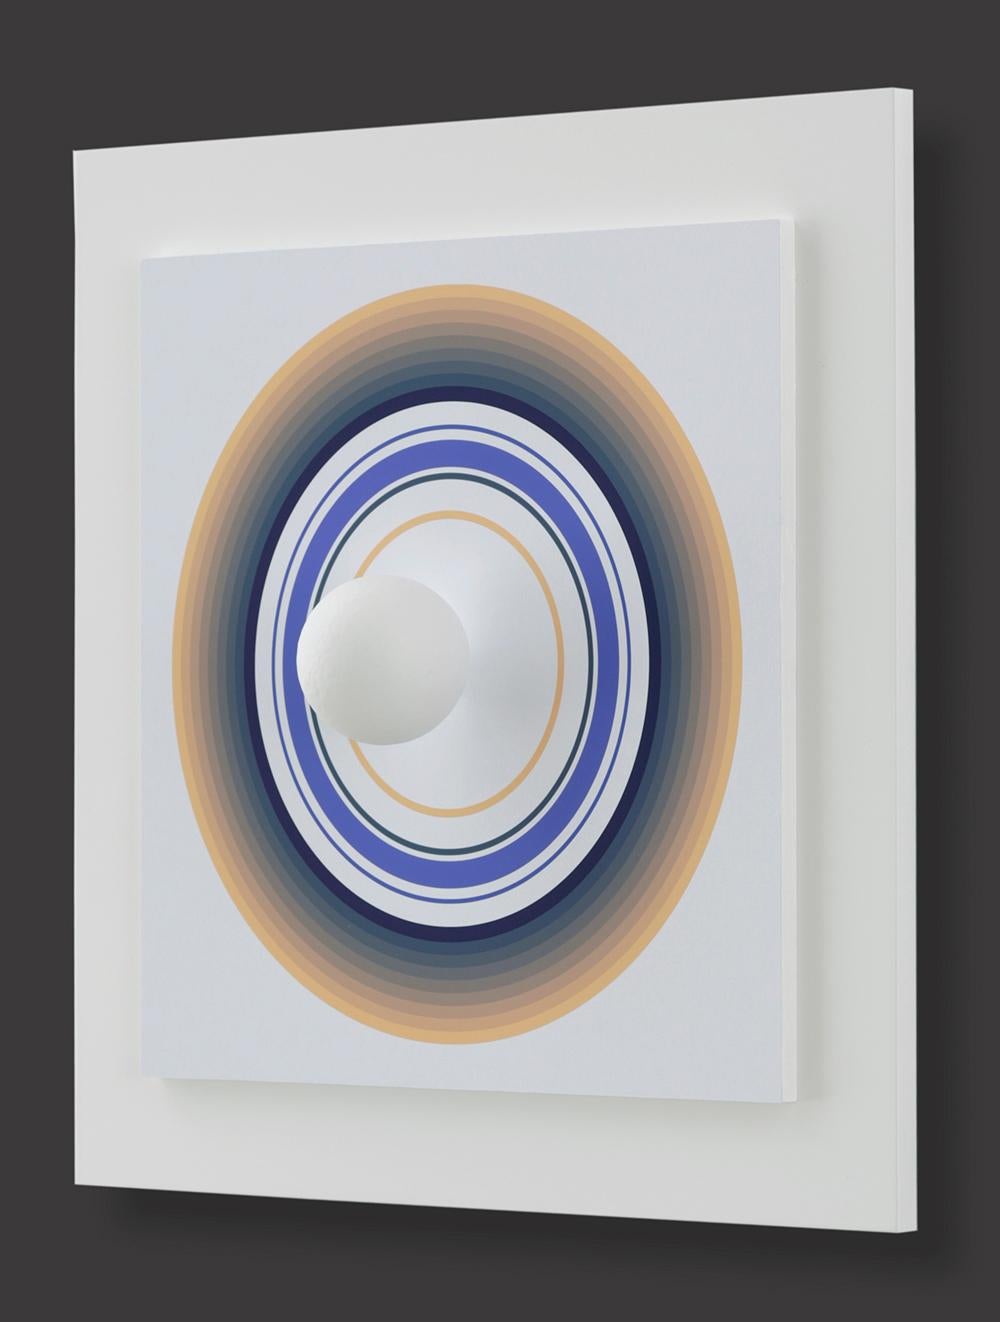 Asistype 4 - boule sur cercle - Op Art Mixed Media Art by Antonio Asis